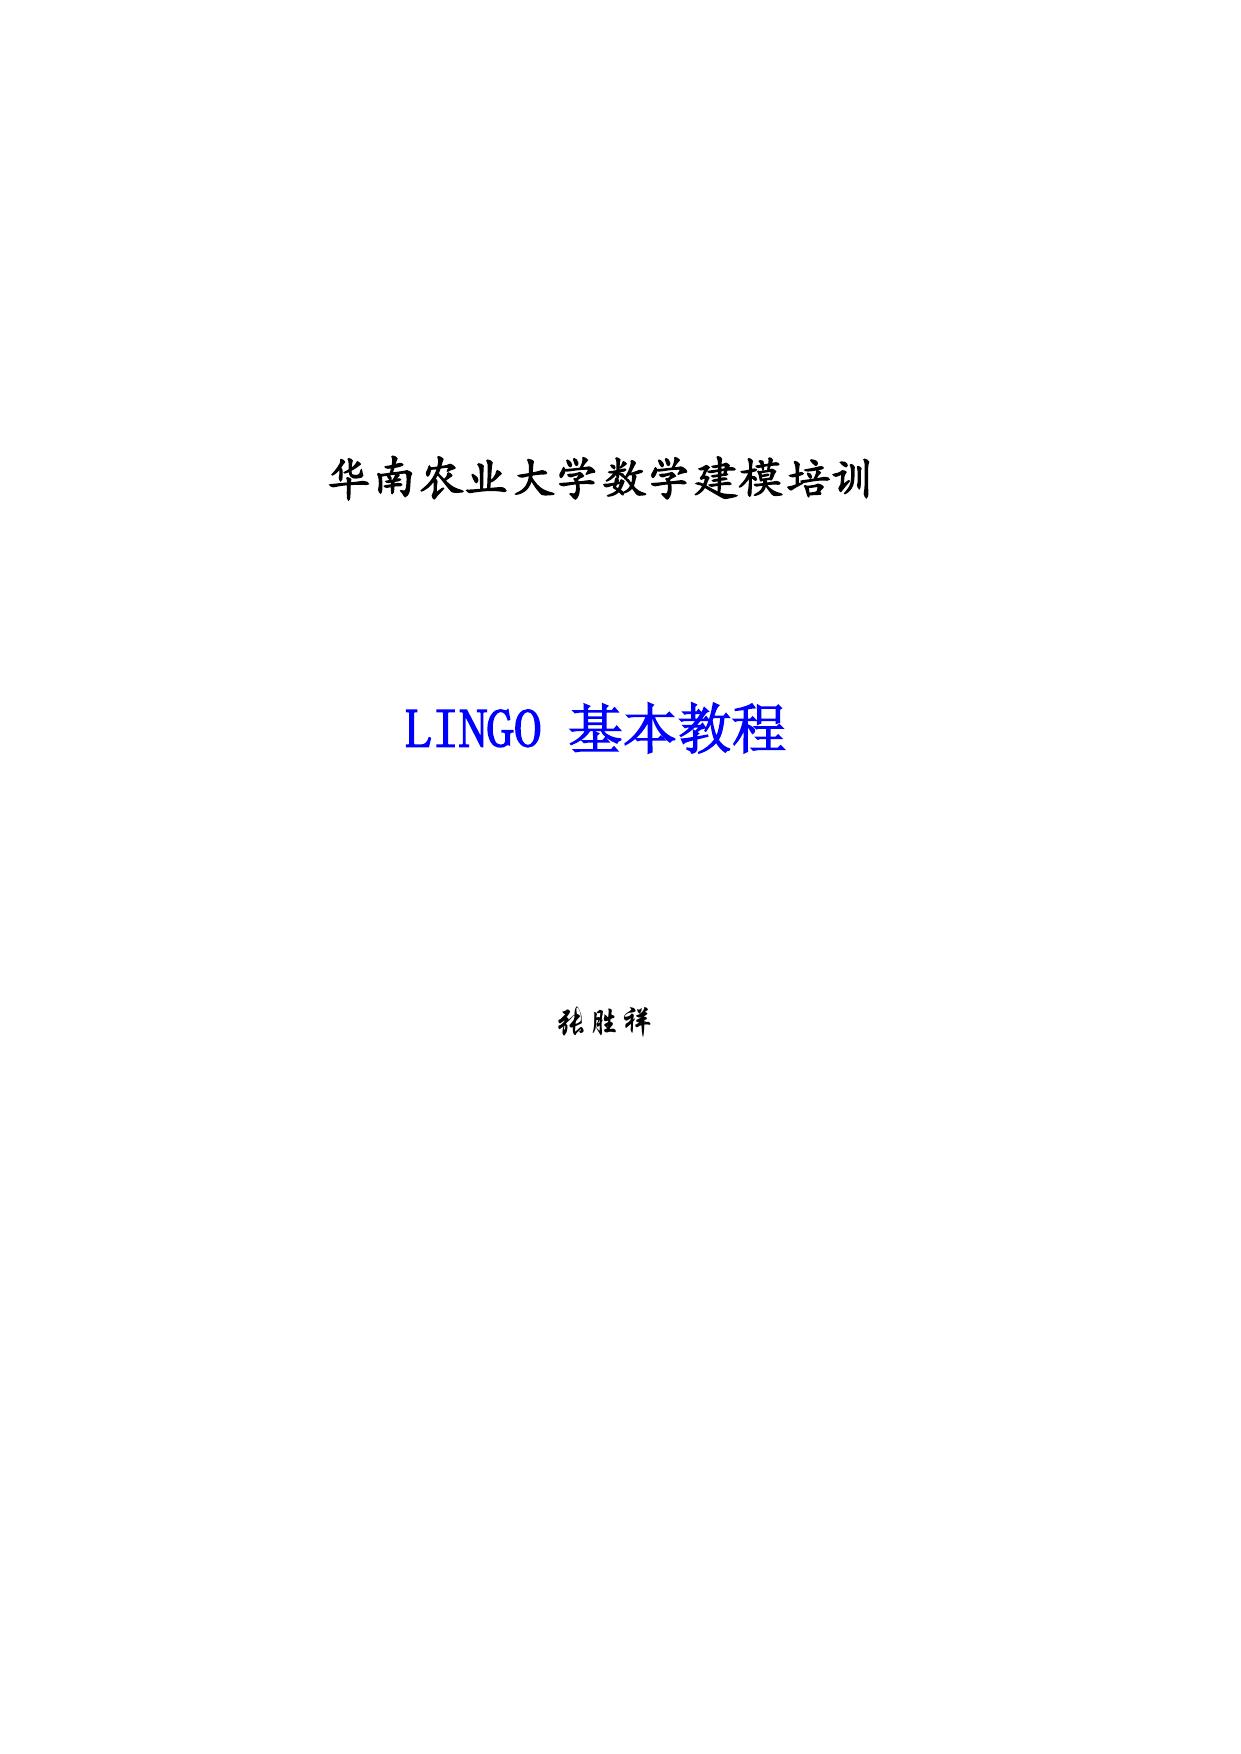 LINGO 基本教程